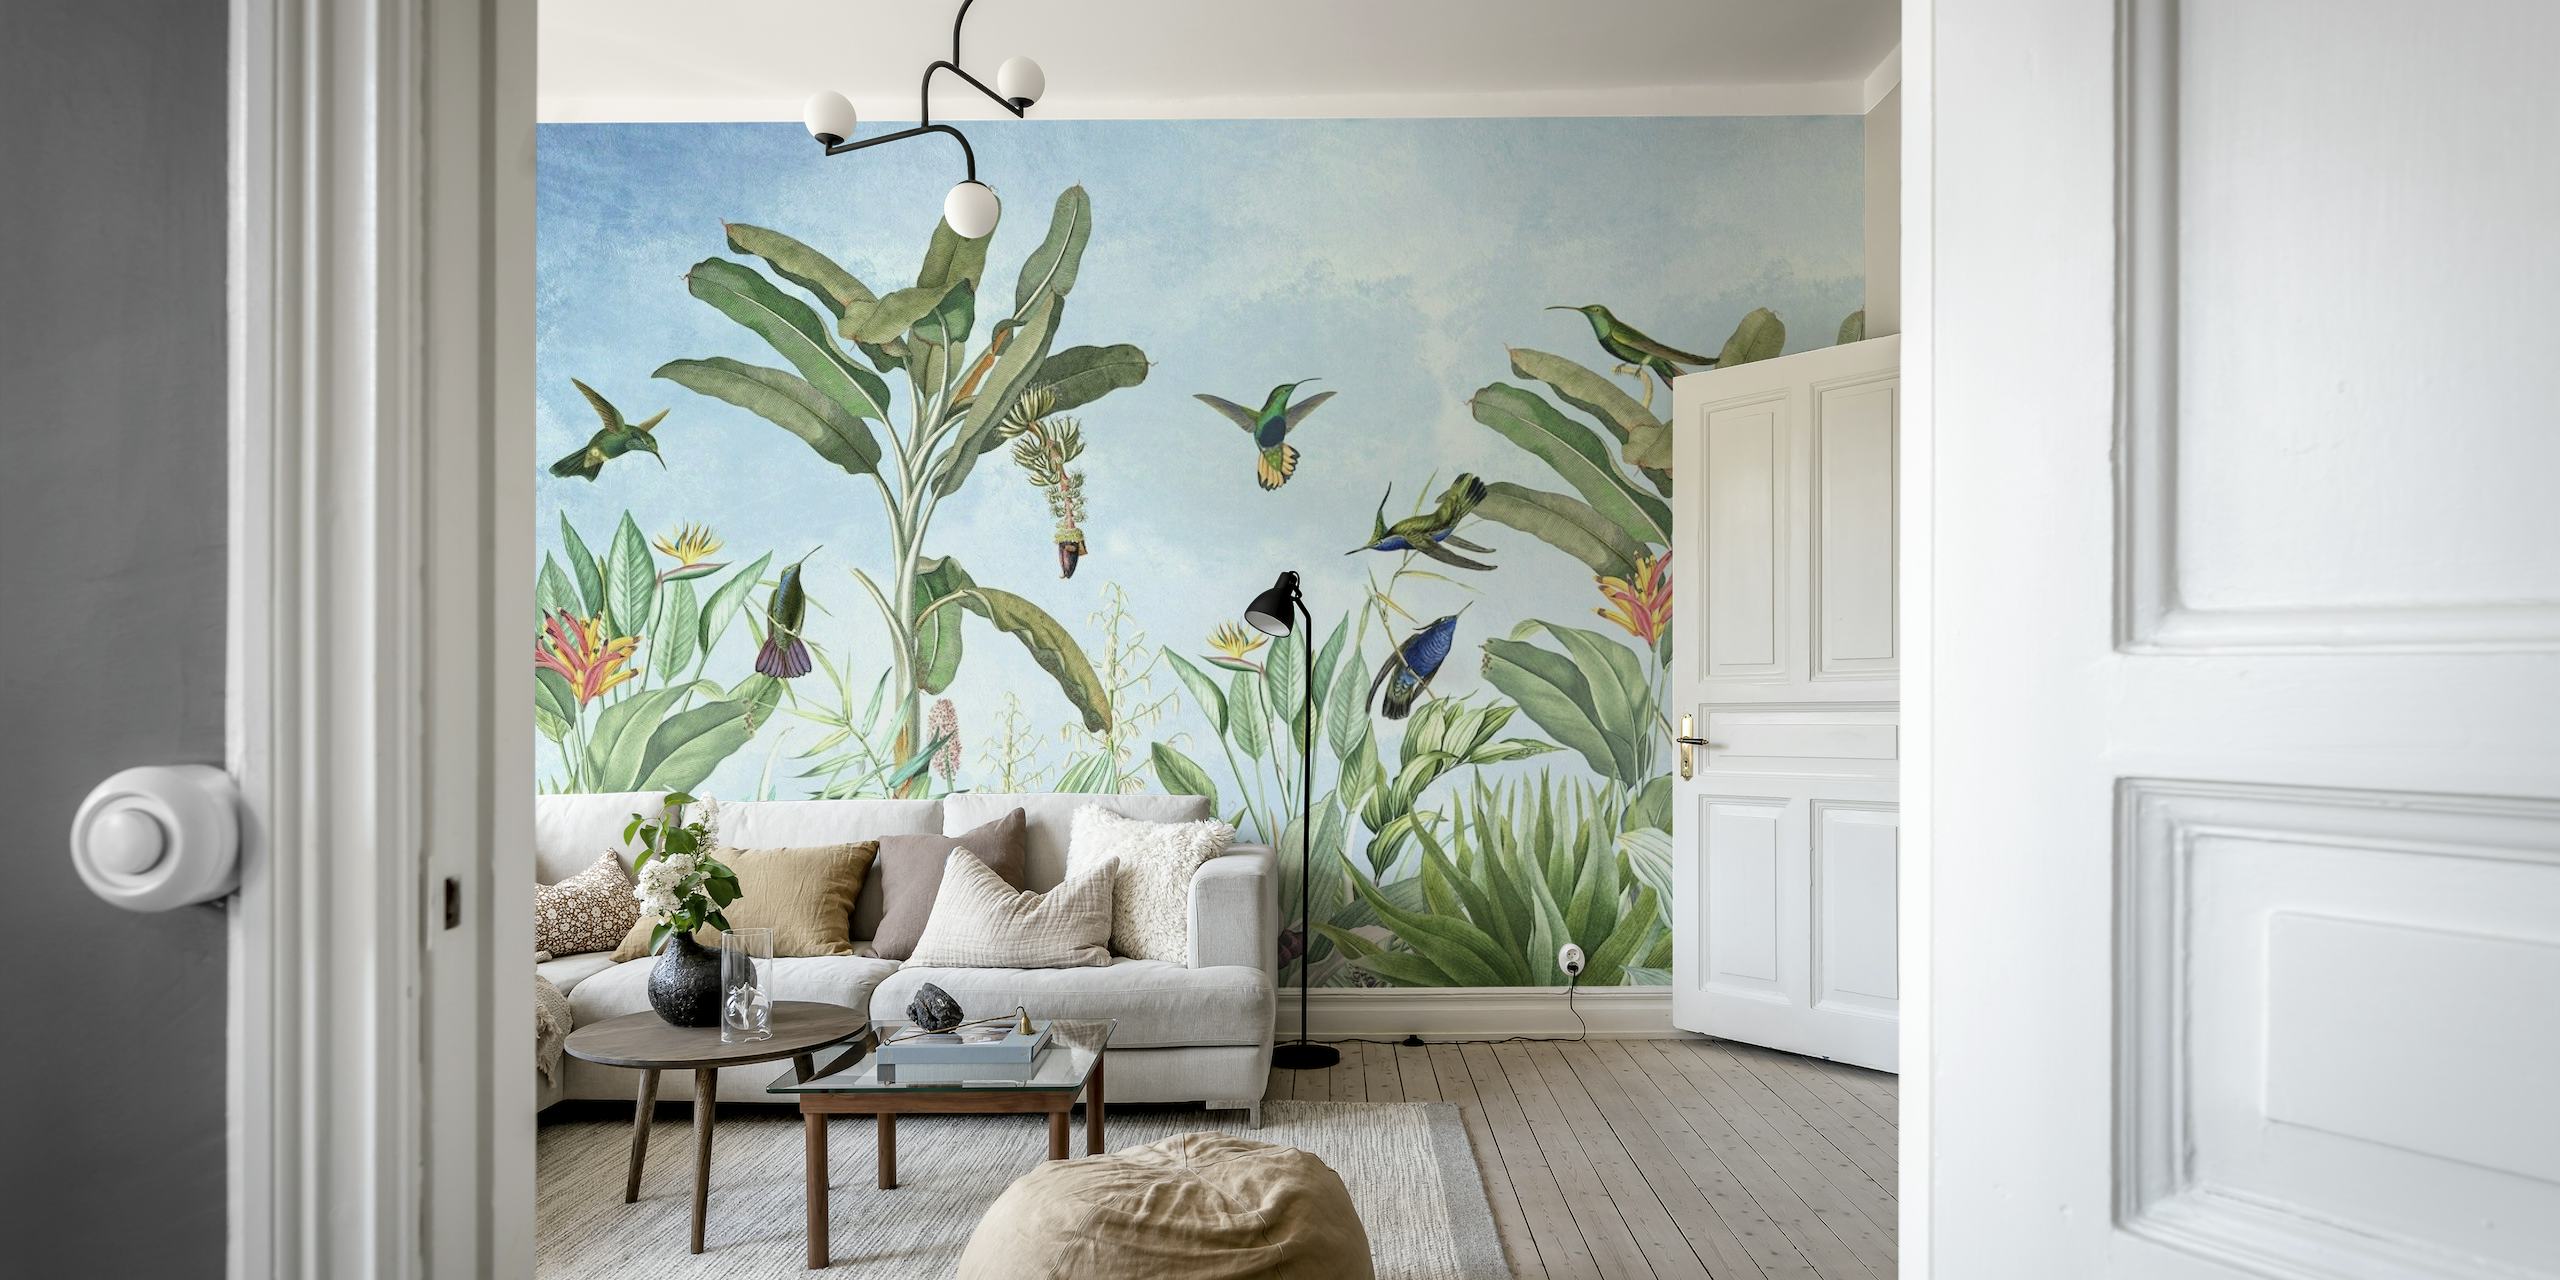 Egzotični starinski dizajn zidnih slika s kolibrićem i biljkama.